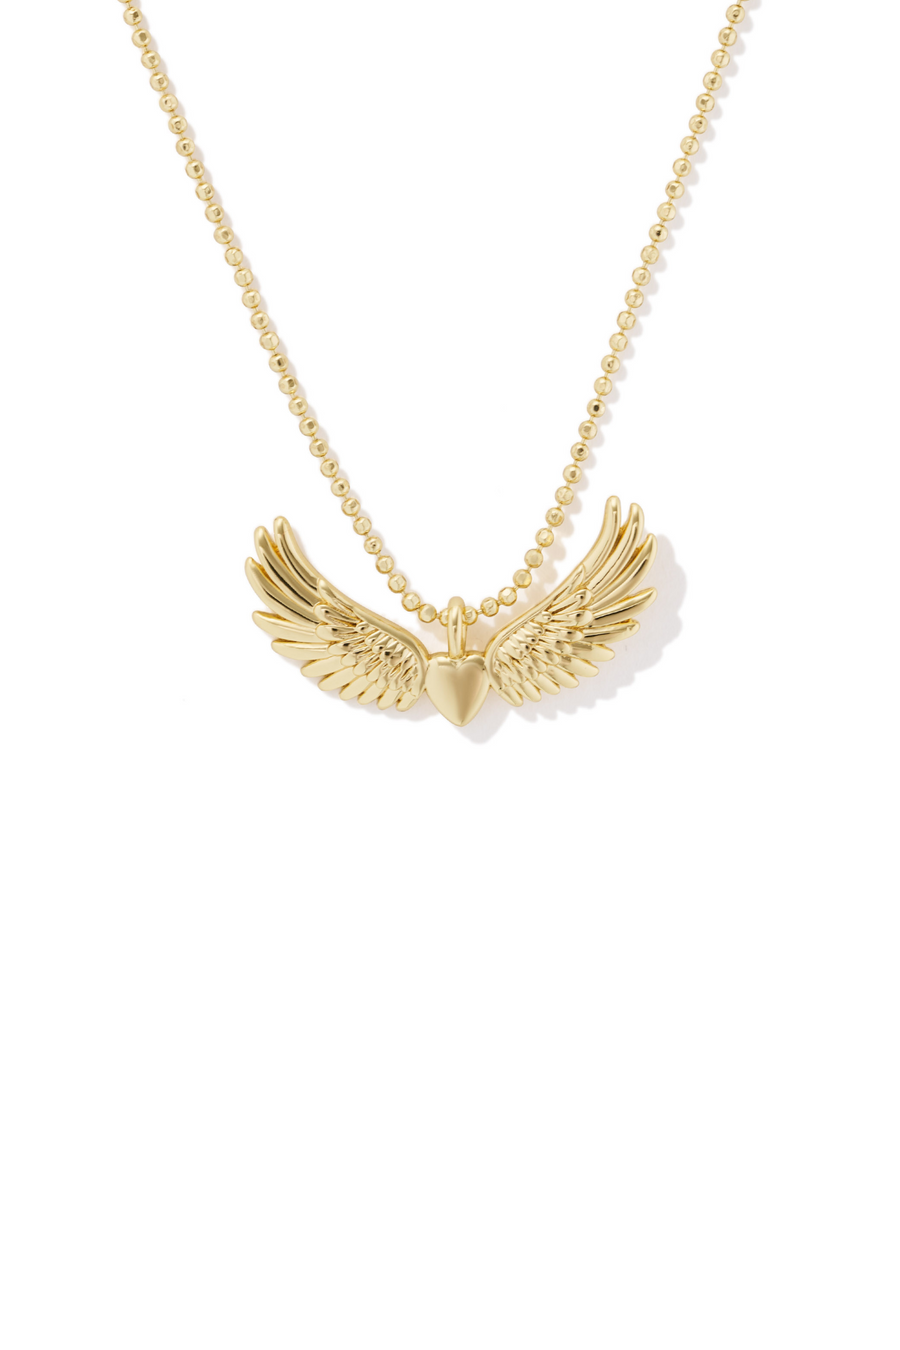 Pegasus Charm Necklace